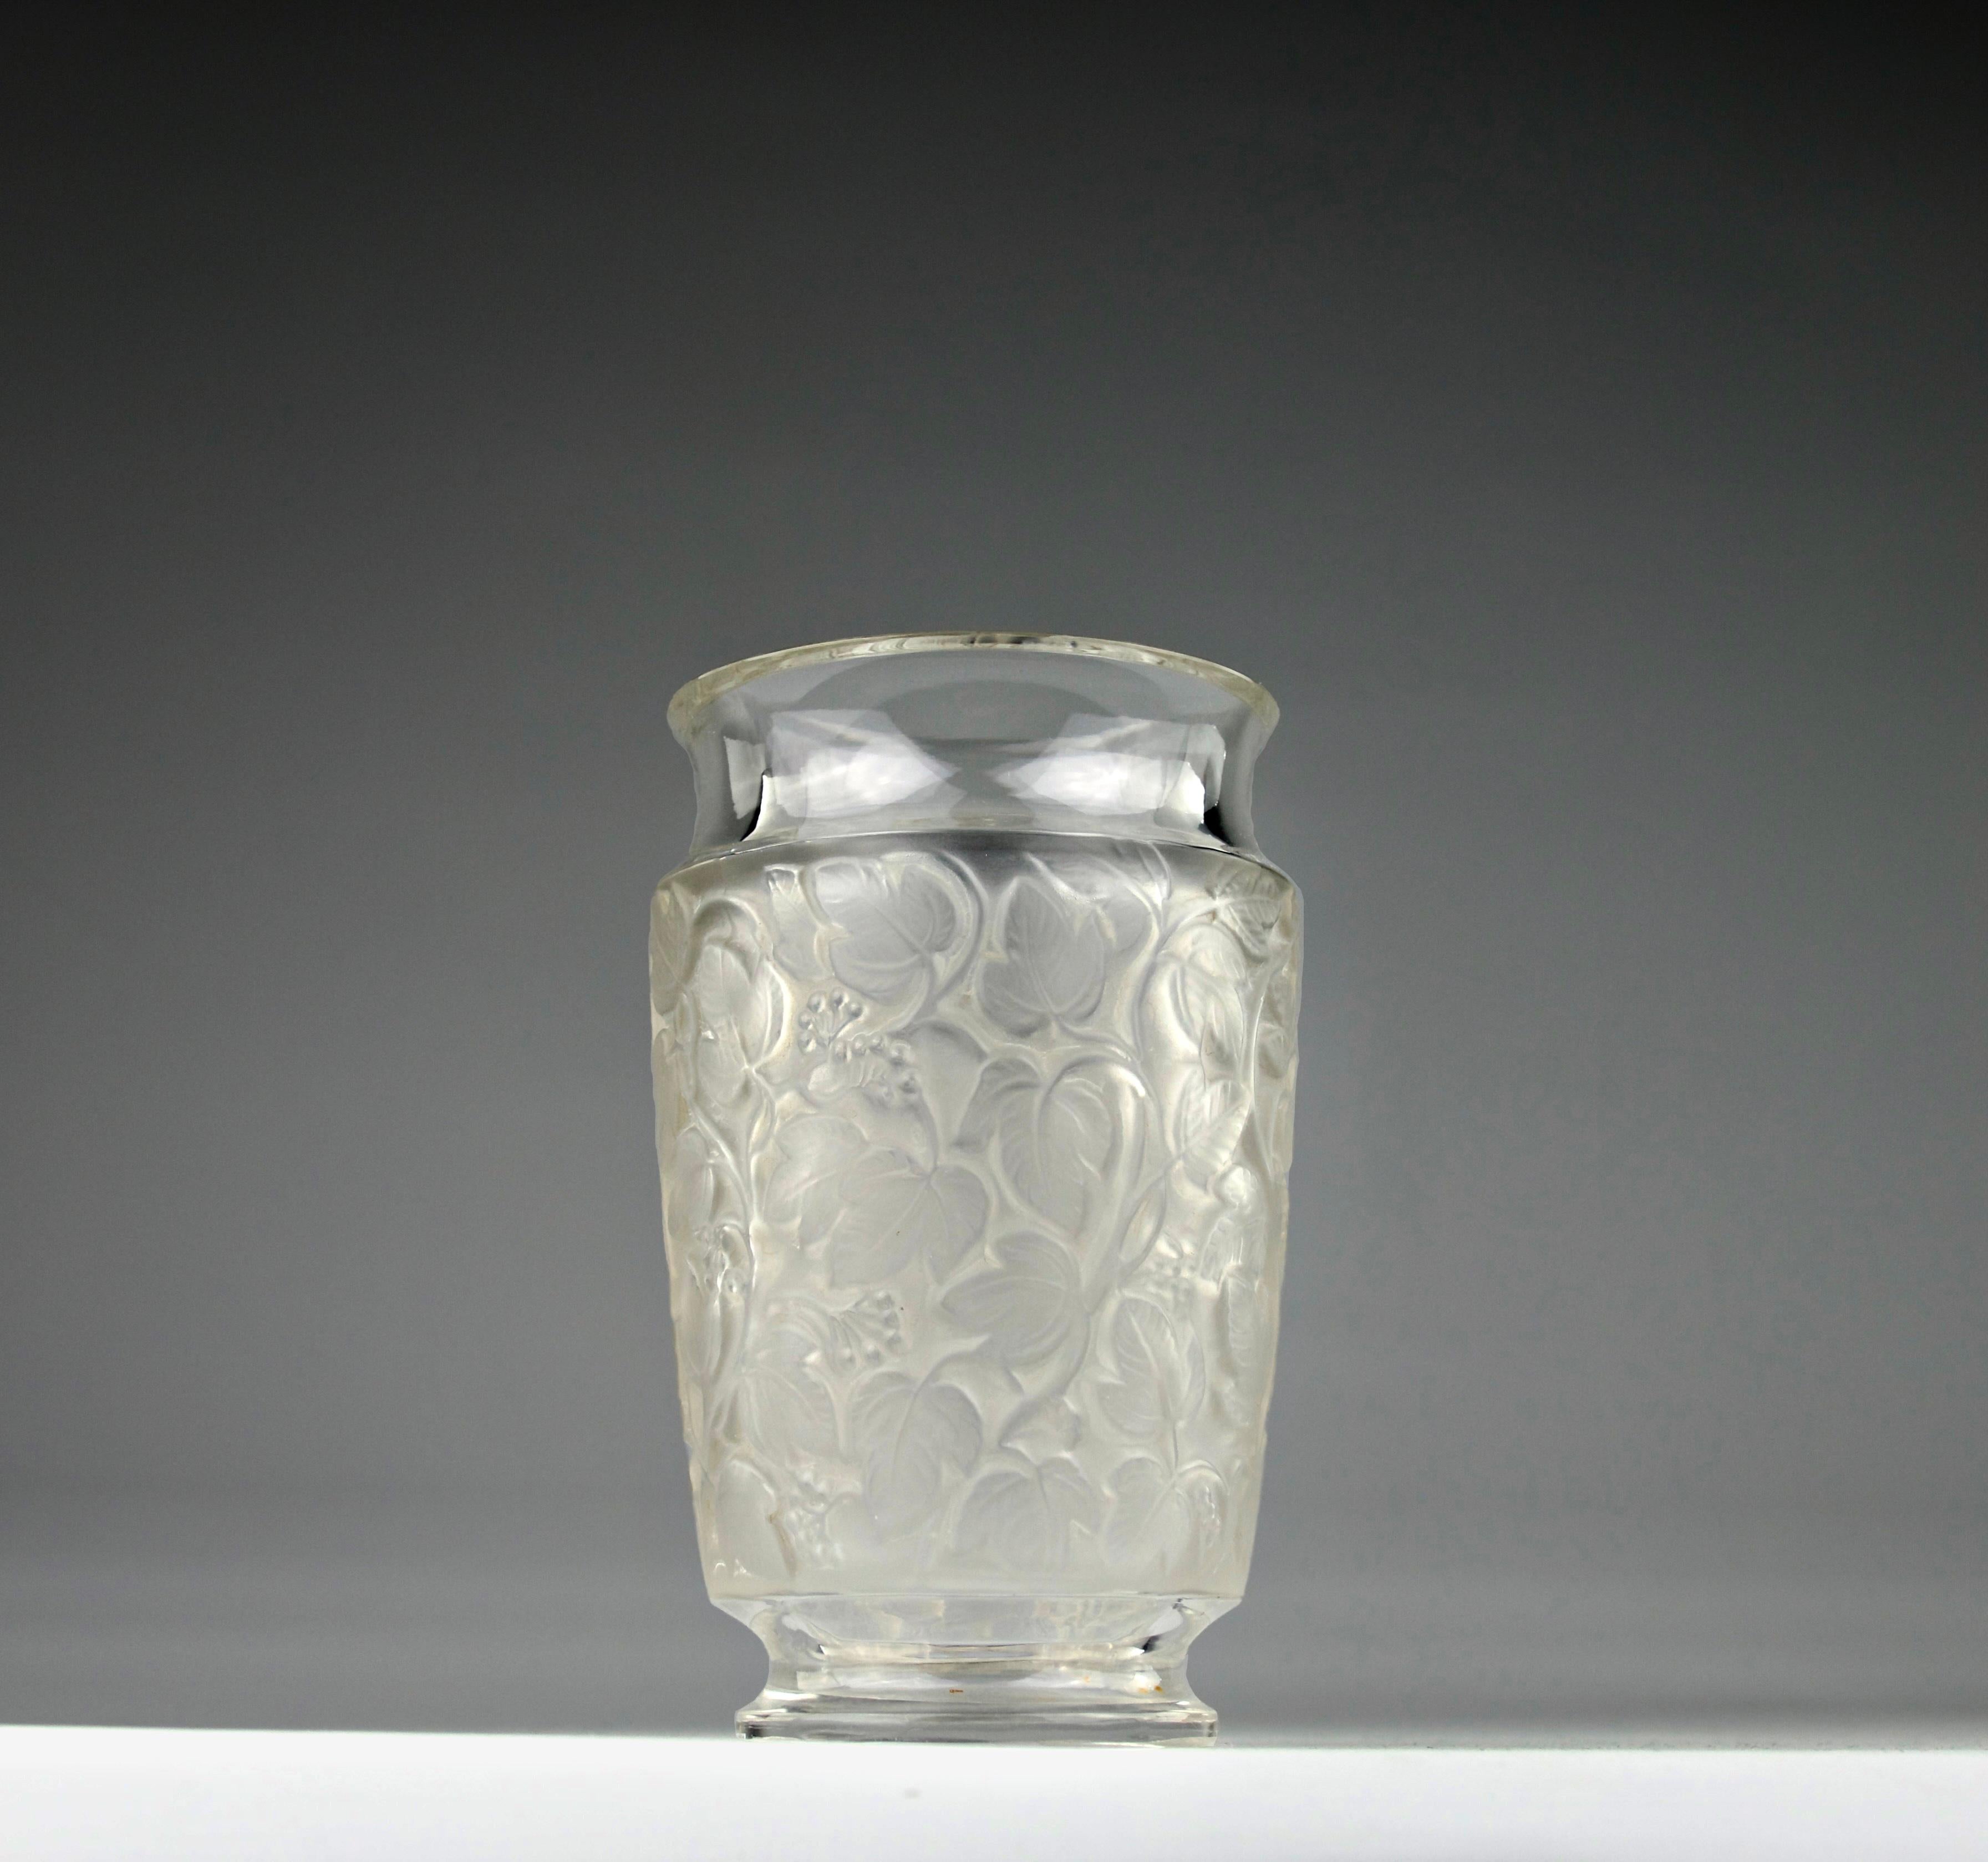 Beau vase Deauville créé par René Lalique avec des décorations de vignes oxydées. Signé Lalique.

En très bon état. Légères traces d'utilisation. A été recoupé par un maître artisan verrier.

Dimensions en cm (H x P) : 14.5 x 9

Expédition